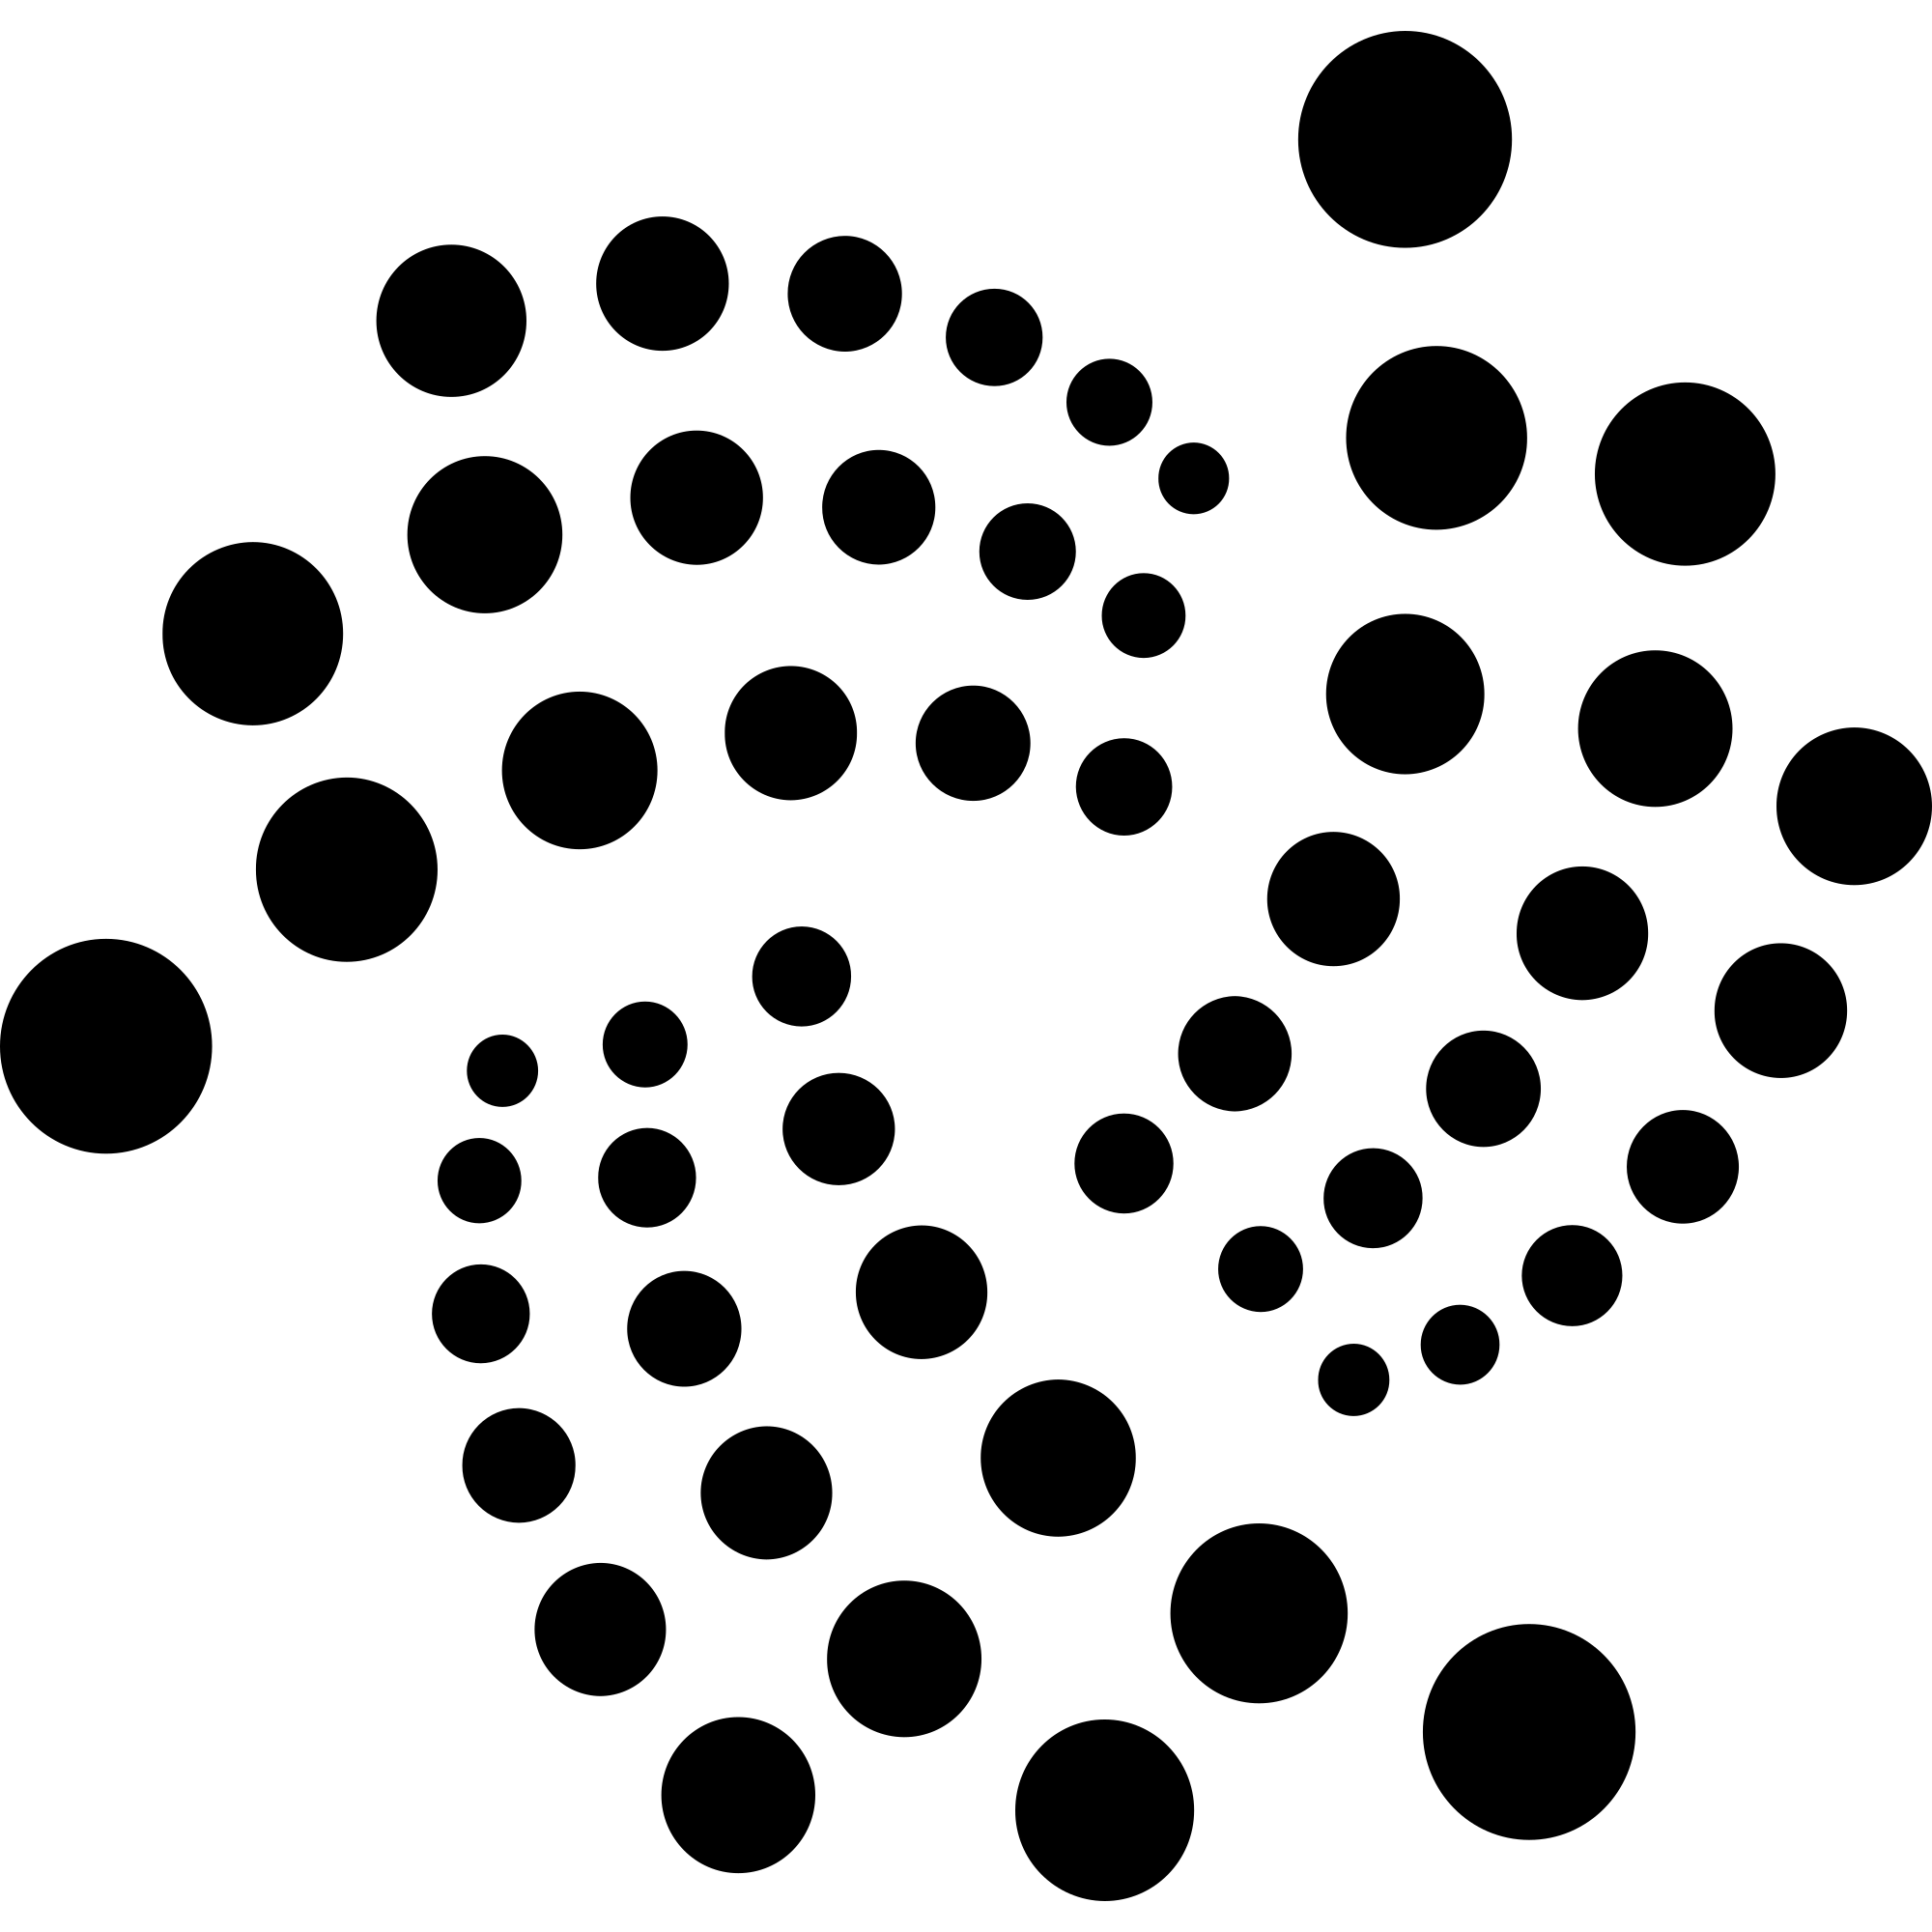 IOTA (MIOTA) Logosu .SVG ve .PNG Dosyalarını İndir